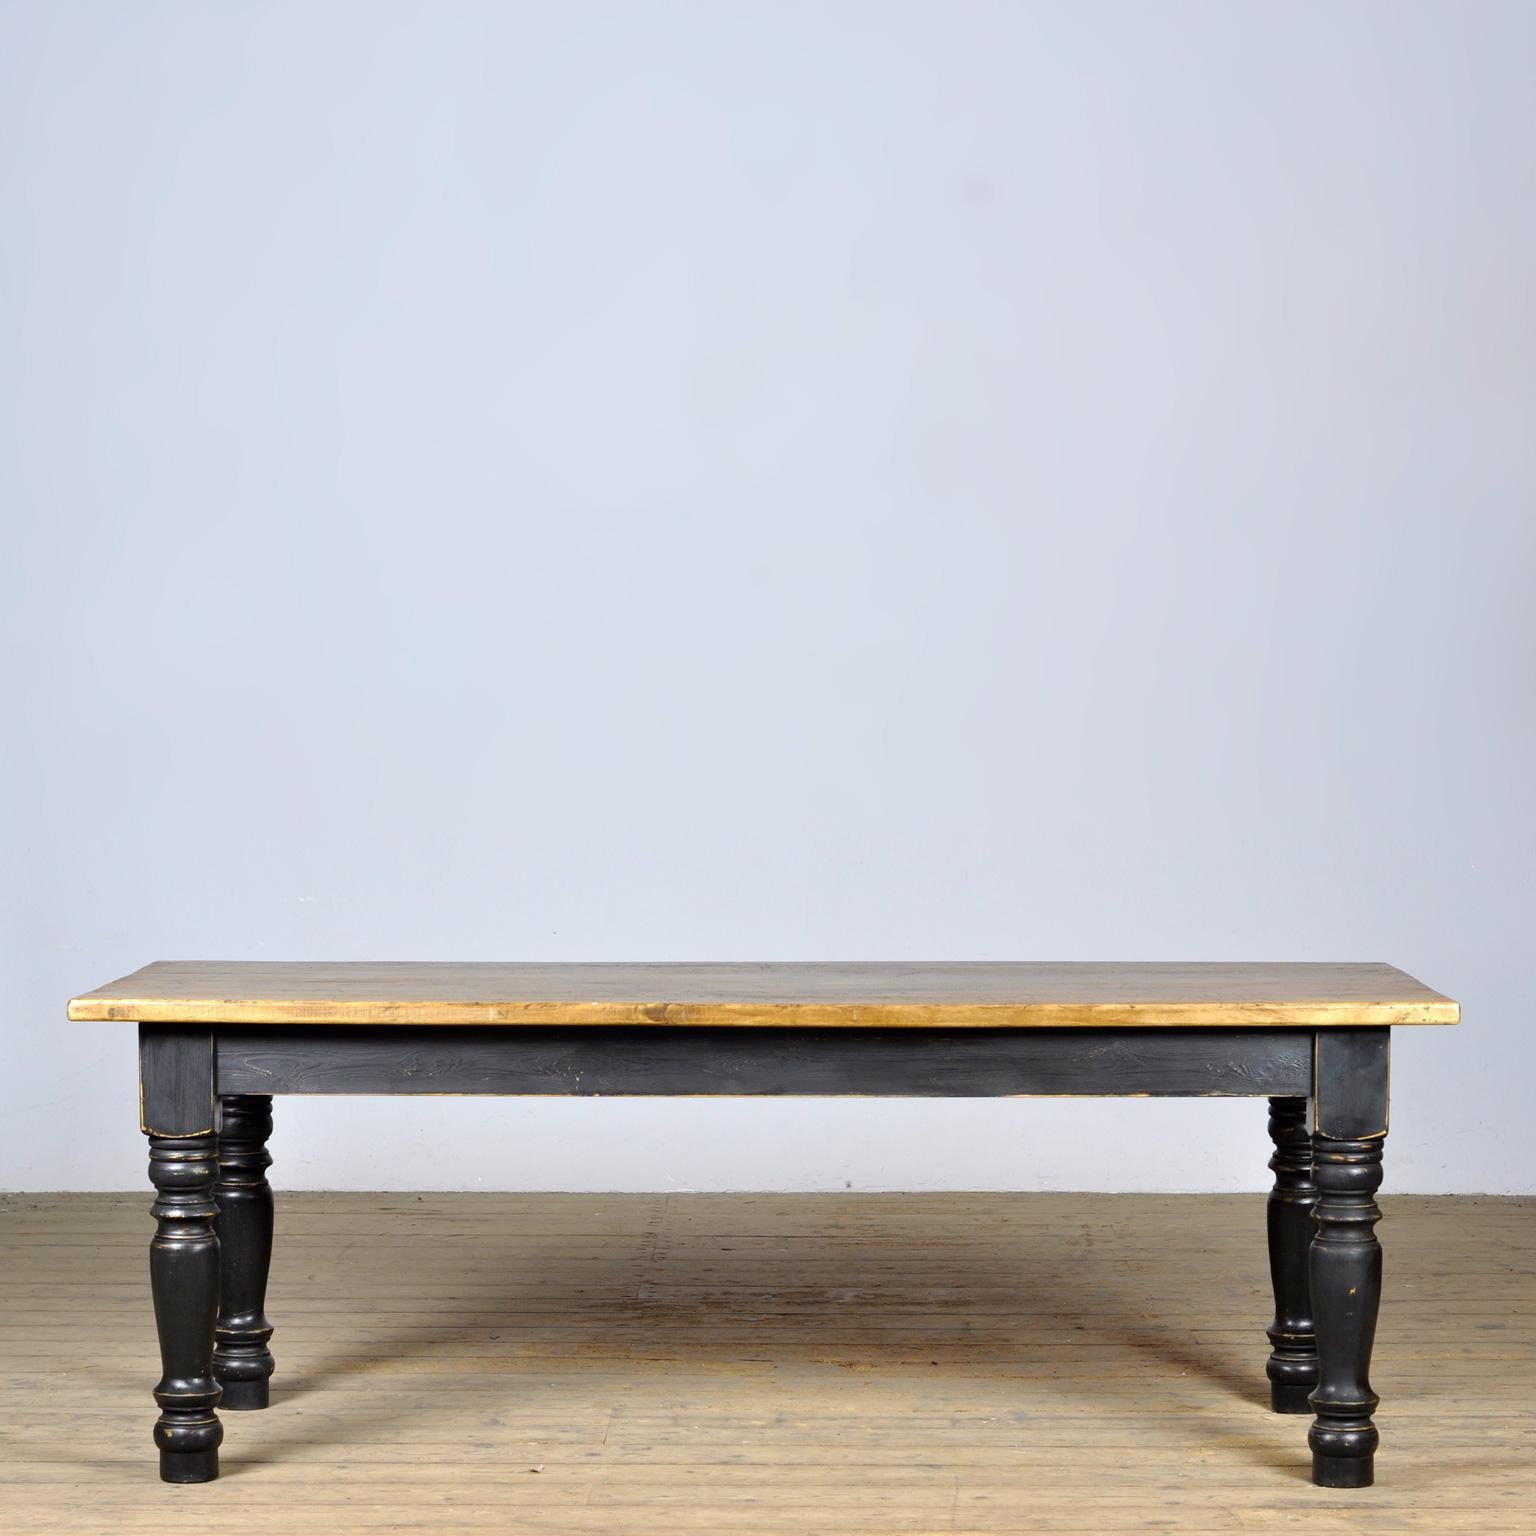 Bauernhoftisch mit schönem Distressed Top. Der Deckel wurde um 1920 hergestellt. Die Beine sind neu. Der Tisch bietet Platz für 6 bis 8 Personen.